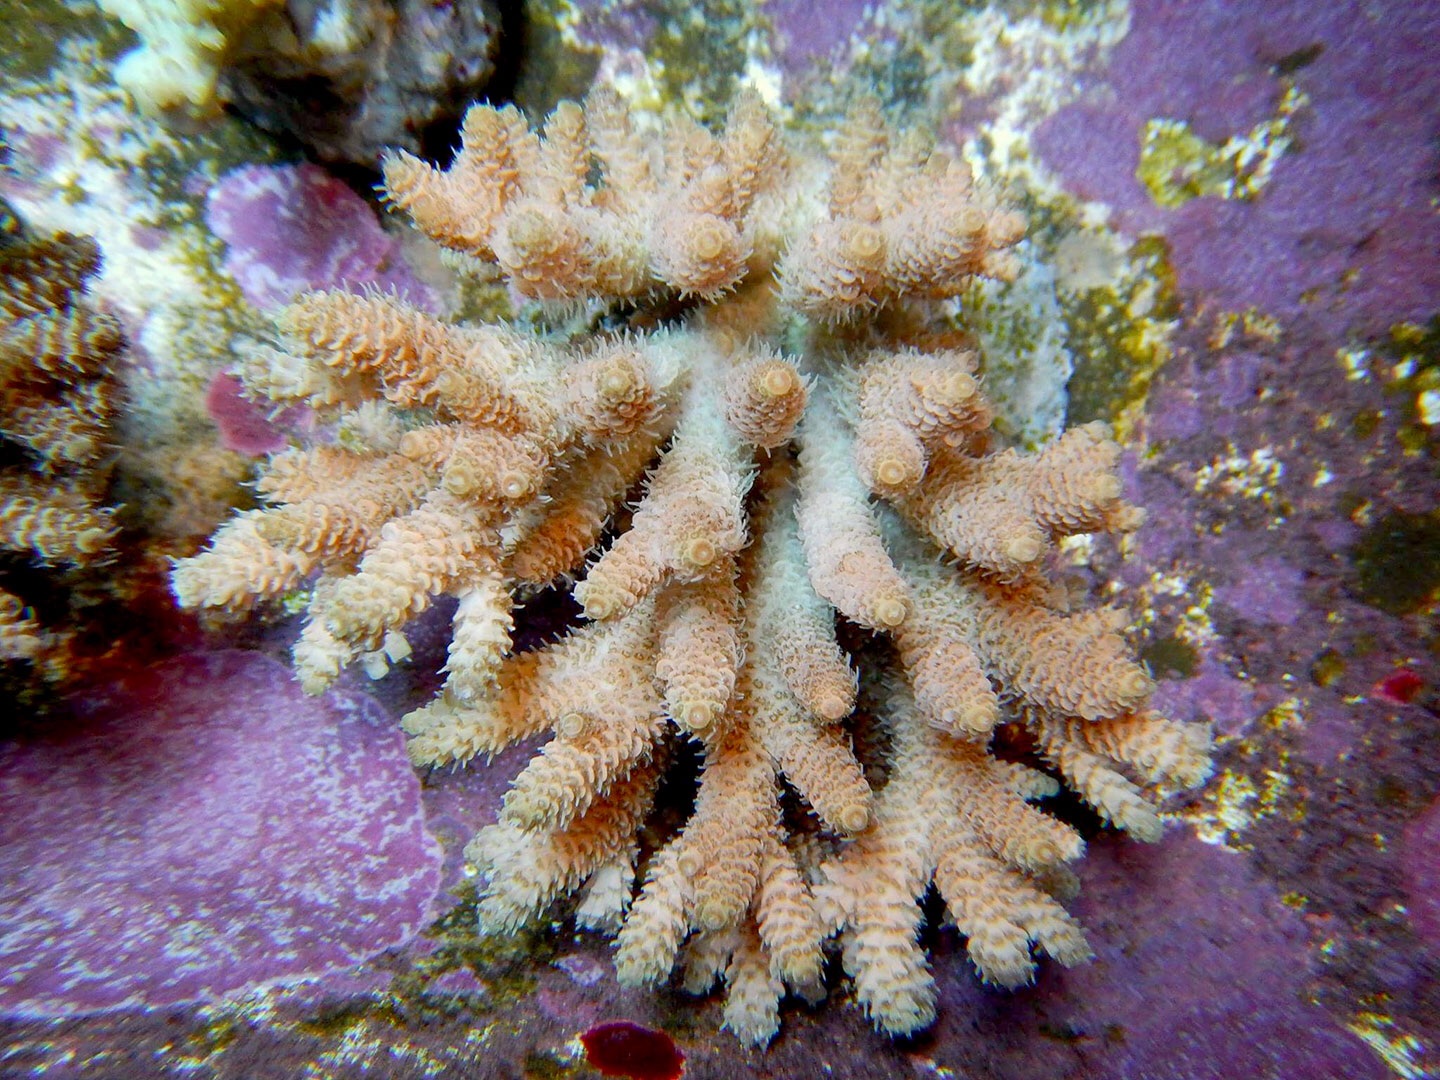 Corals for sale - Dec 2016